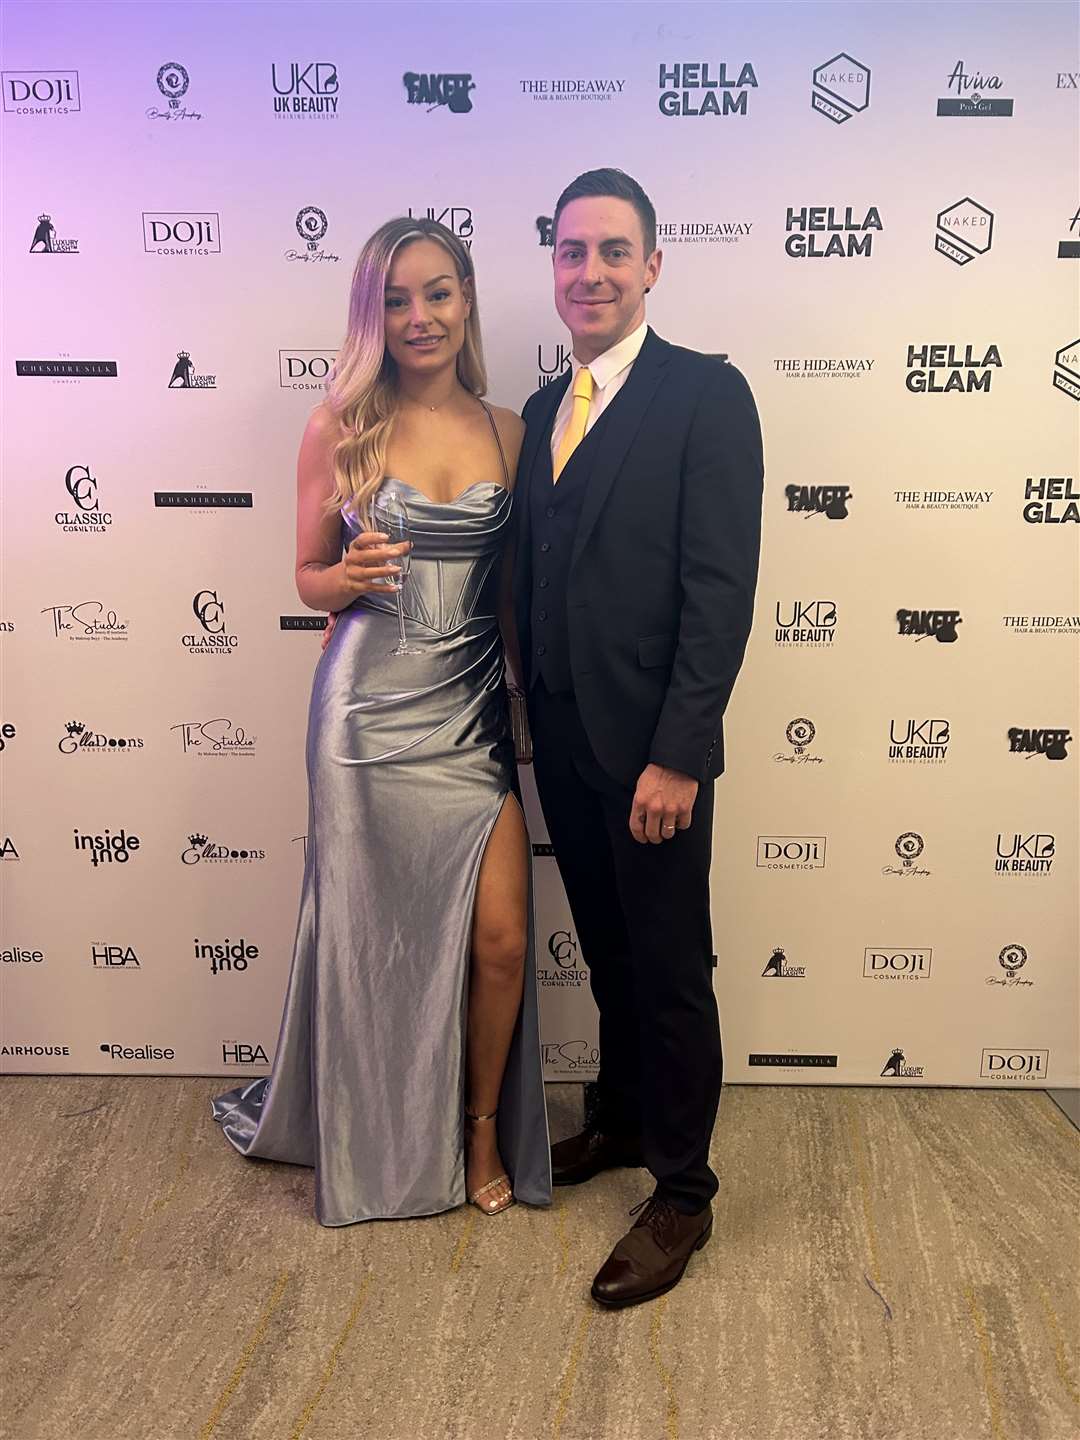 Lana and her husband Craig at the awards